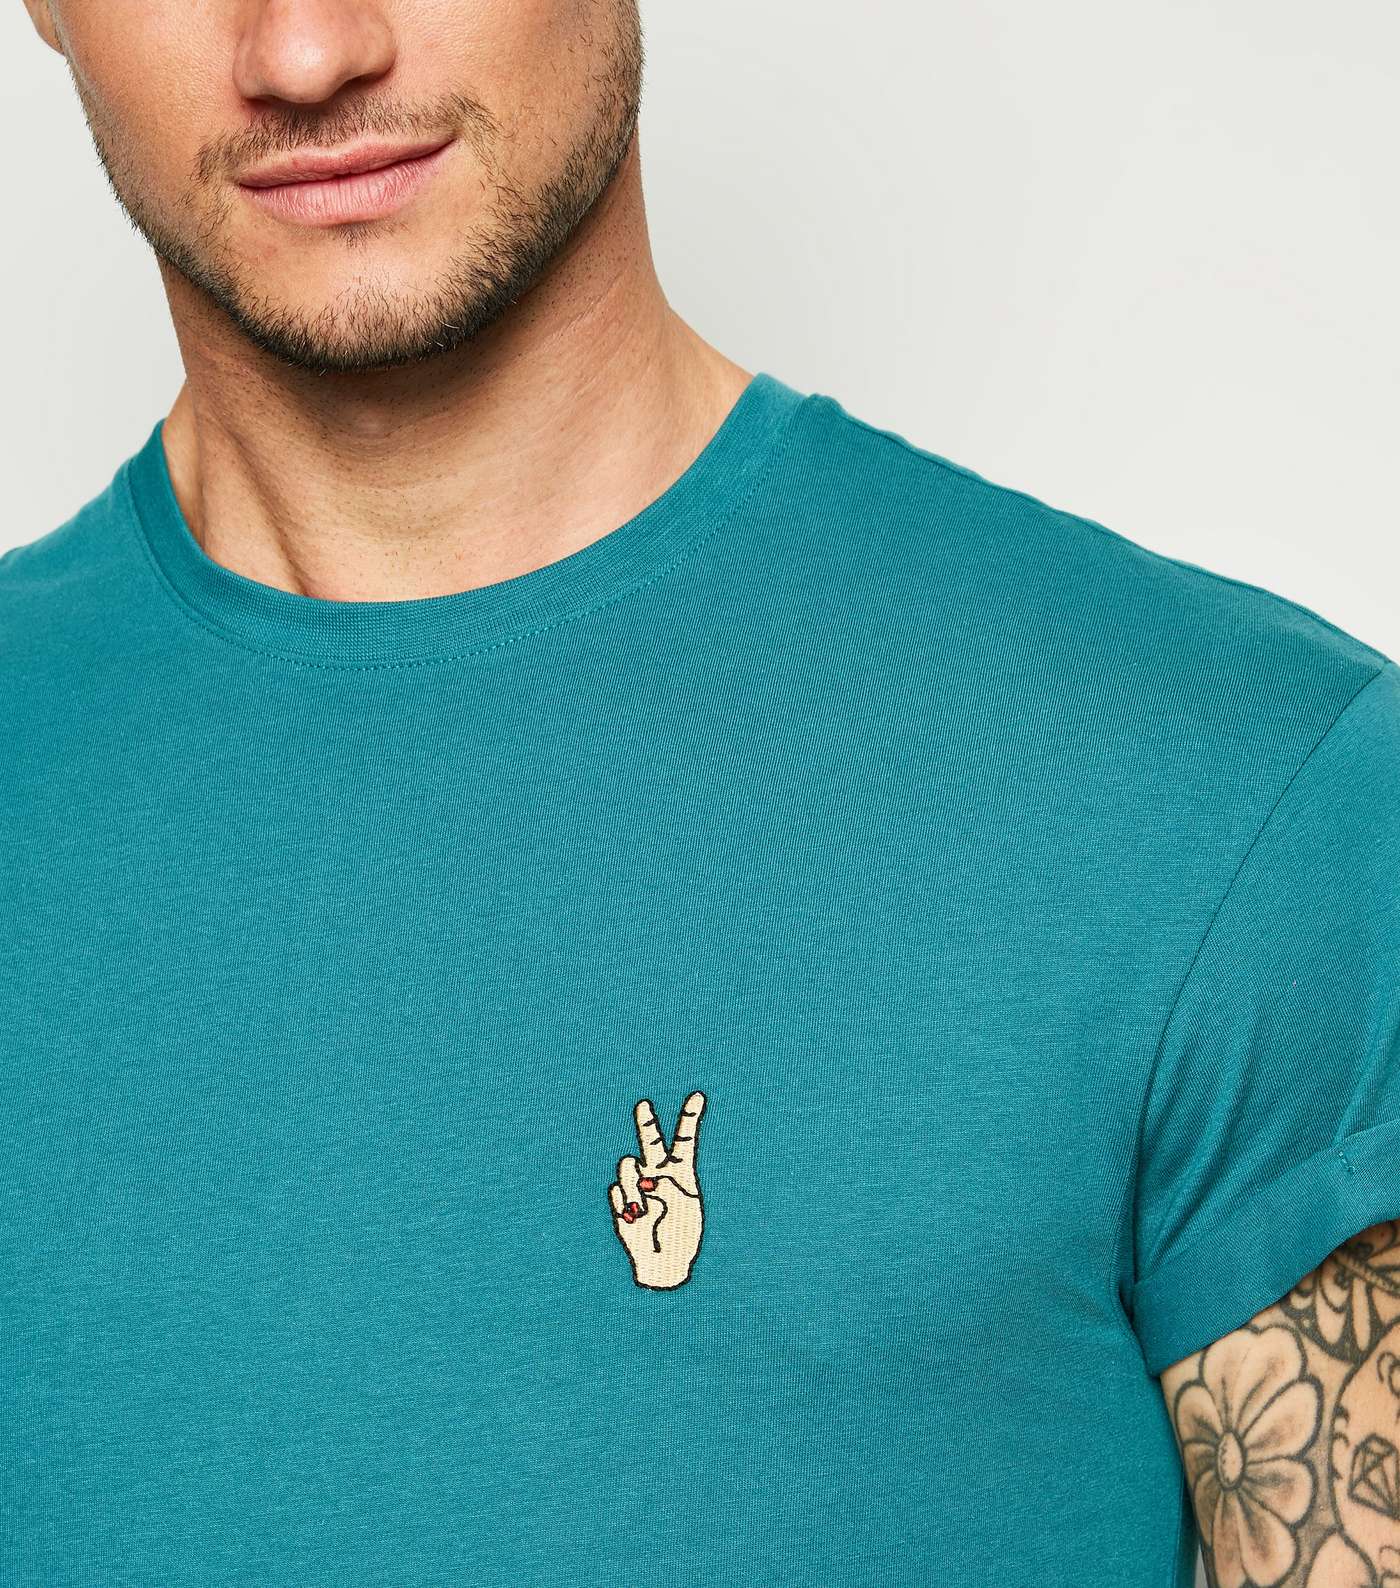 Teal Peace Hand Motif T-Shirt Image 3